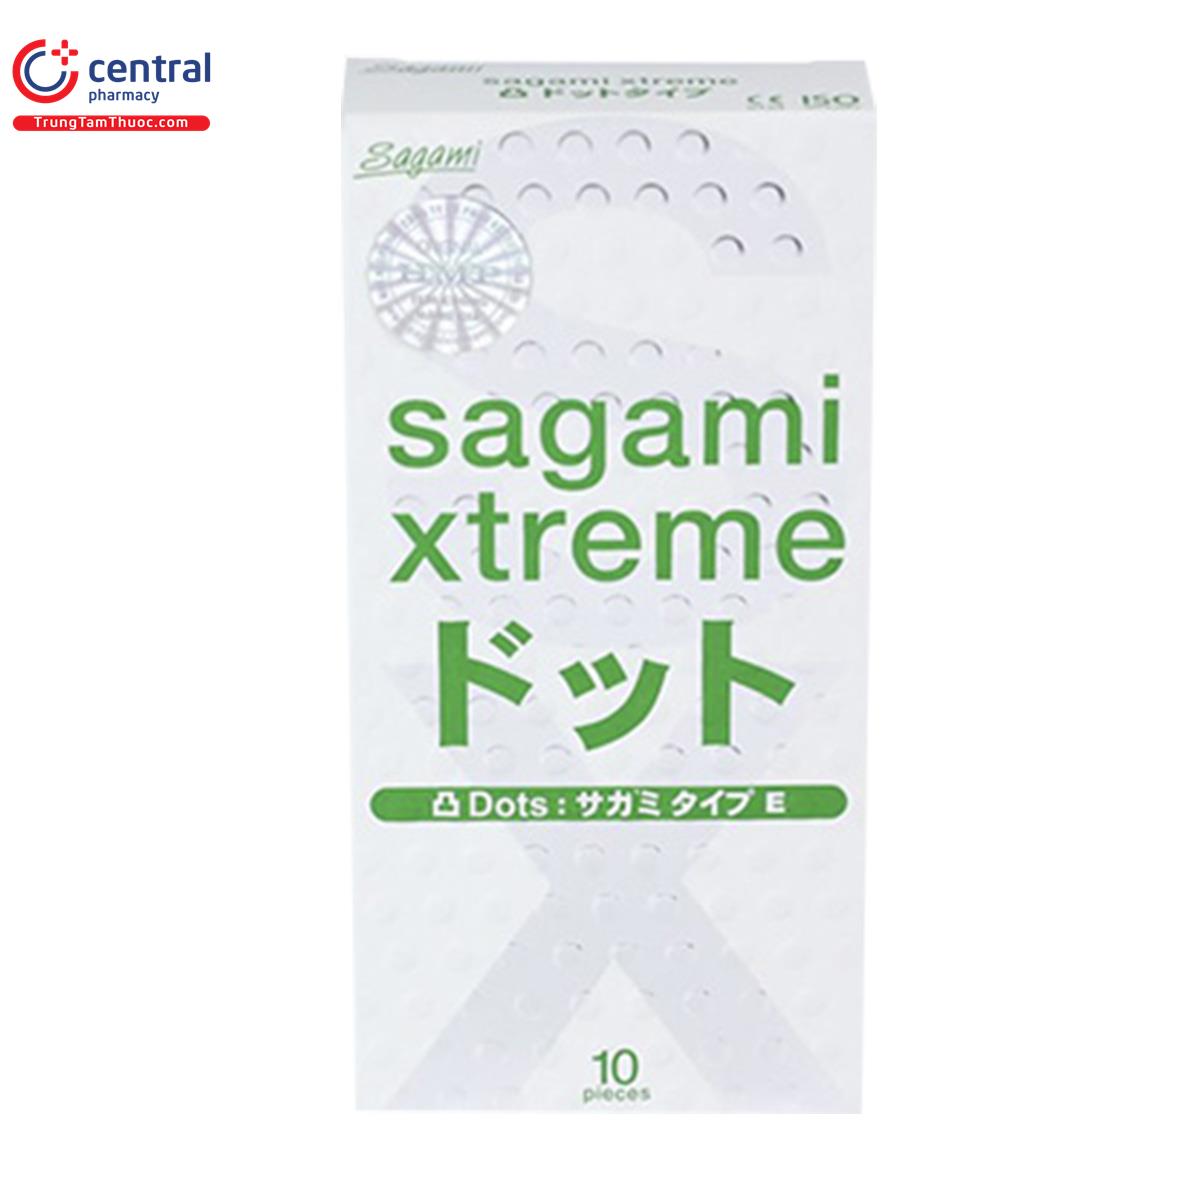 sagami xtreme 4 O6554